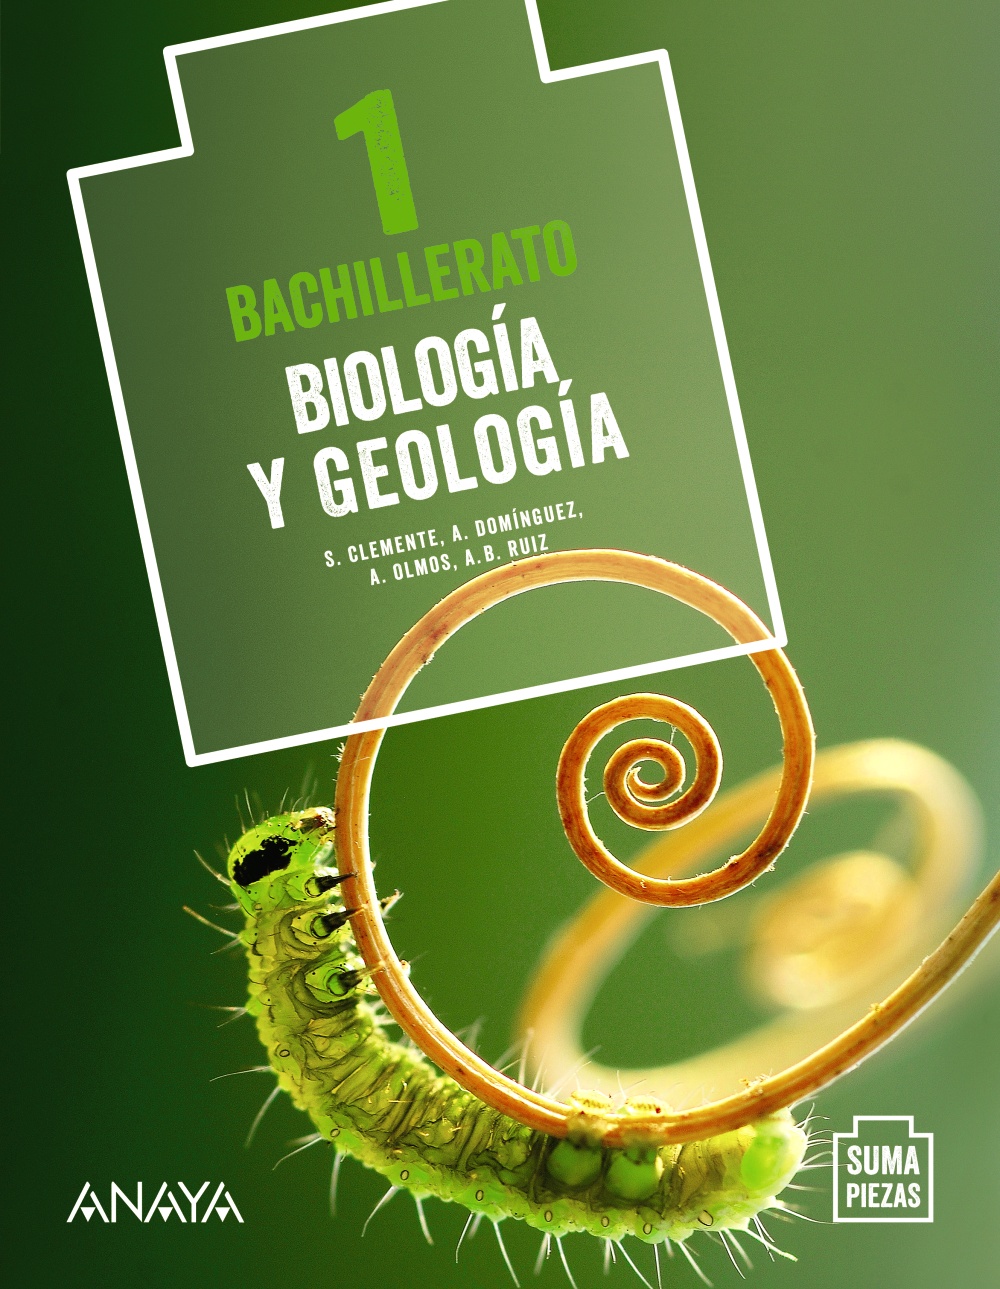 Solucionario Biologia y Geologia 1 Bachillerato Anaya Suma Piezas-pdf